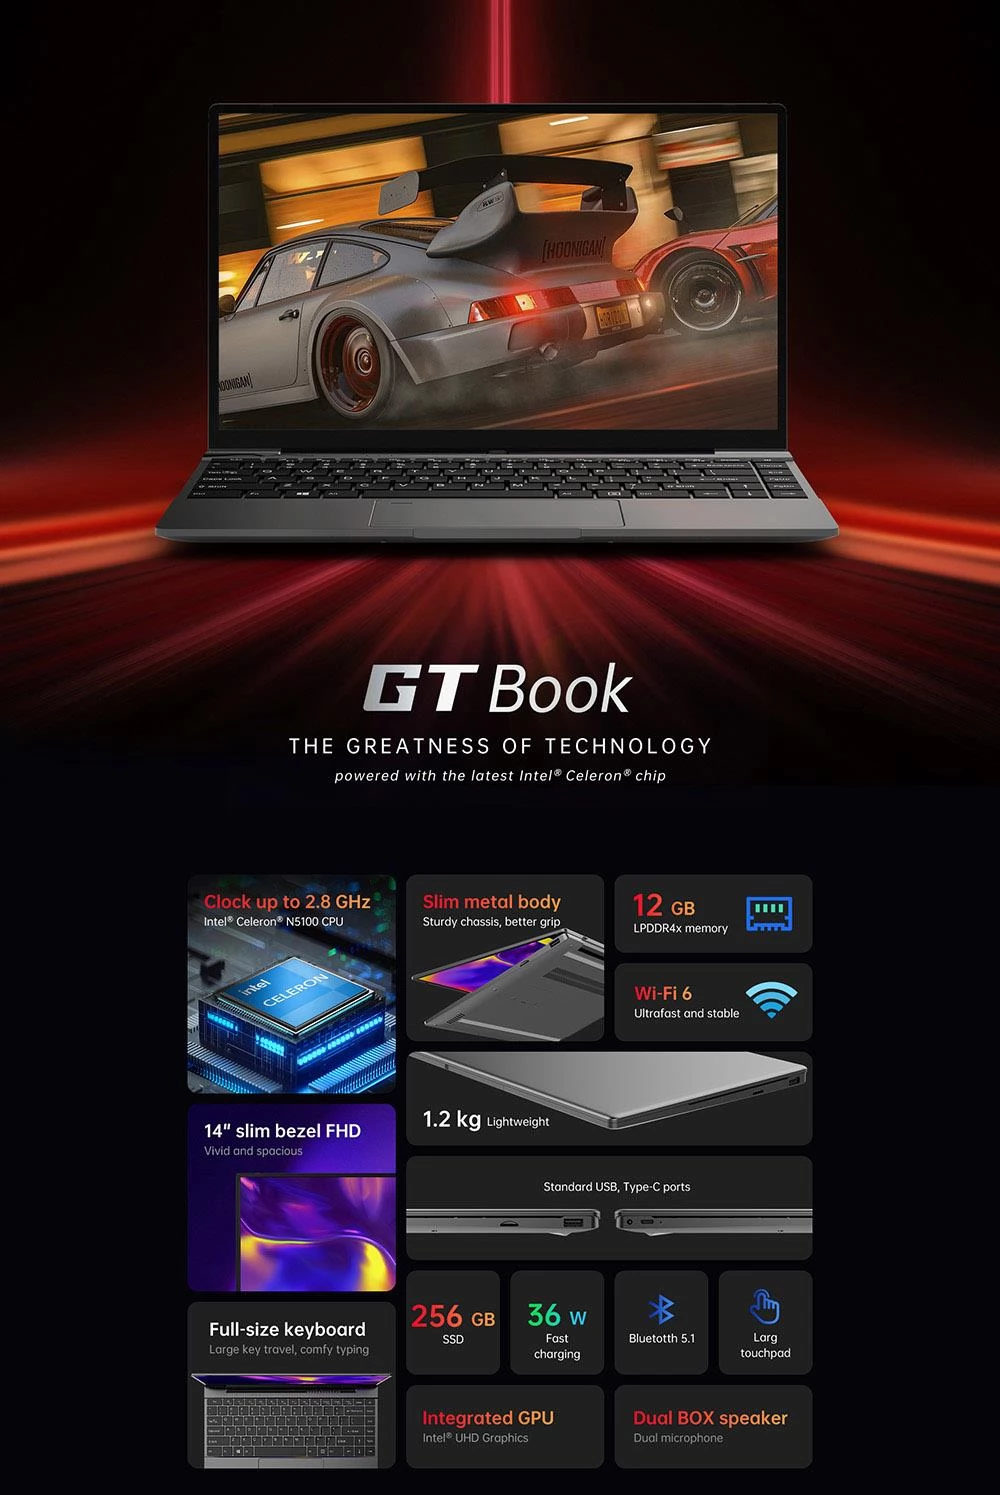 ALLDOCUBE GT Book-laptop, resolutie 1920 x 1080, 14,1 inch HD-scherm, 256 GB SSD-opslag, 48 uur stand-by batterijduur